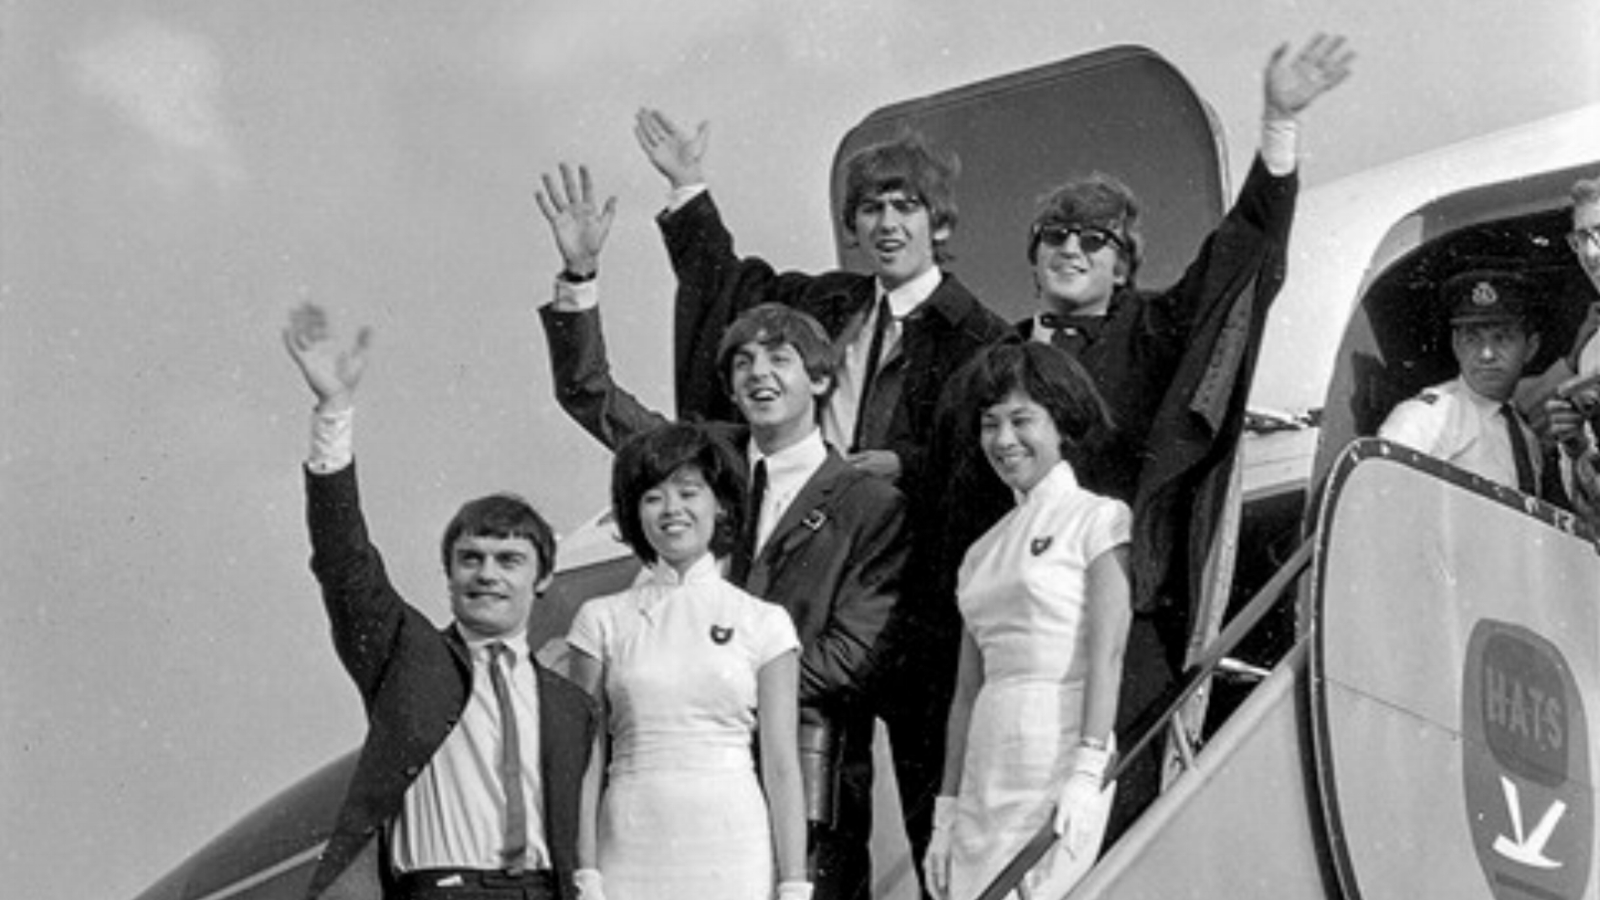 Beatles SCMP 1.jpg